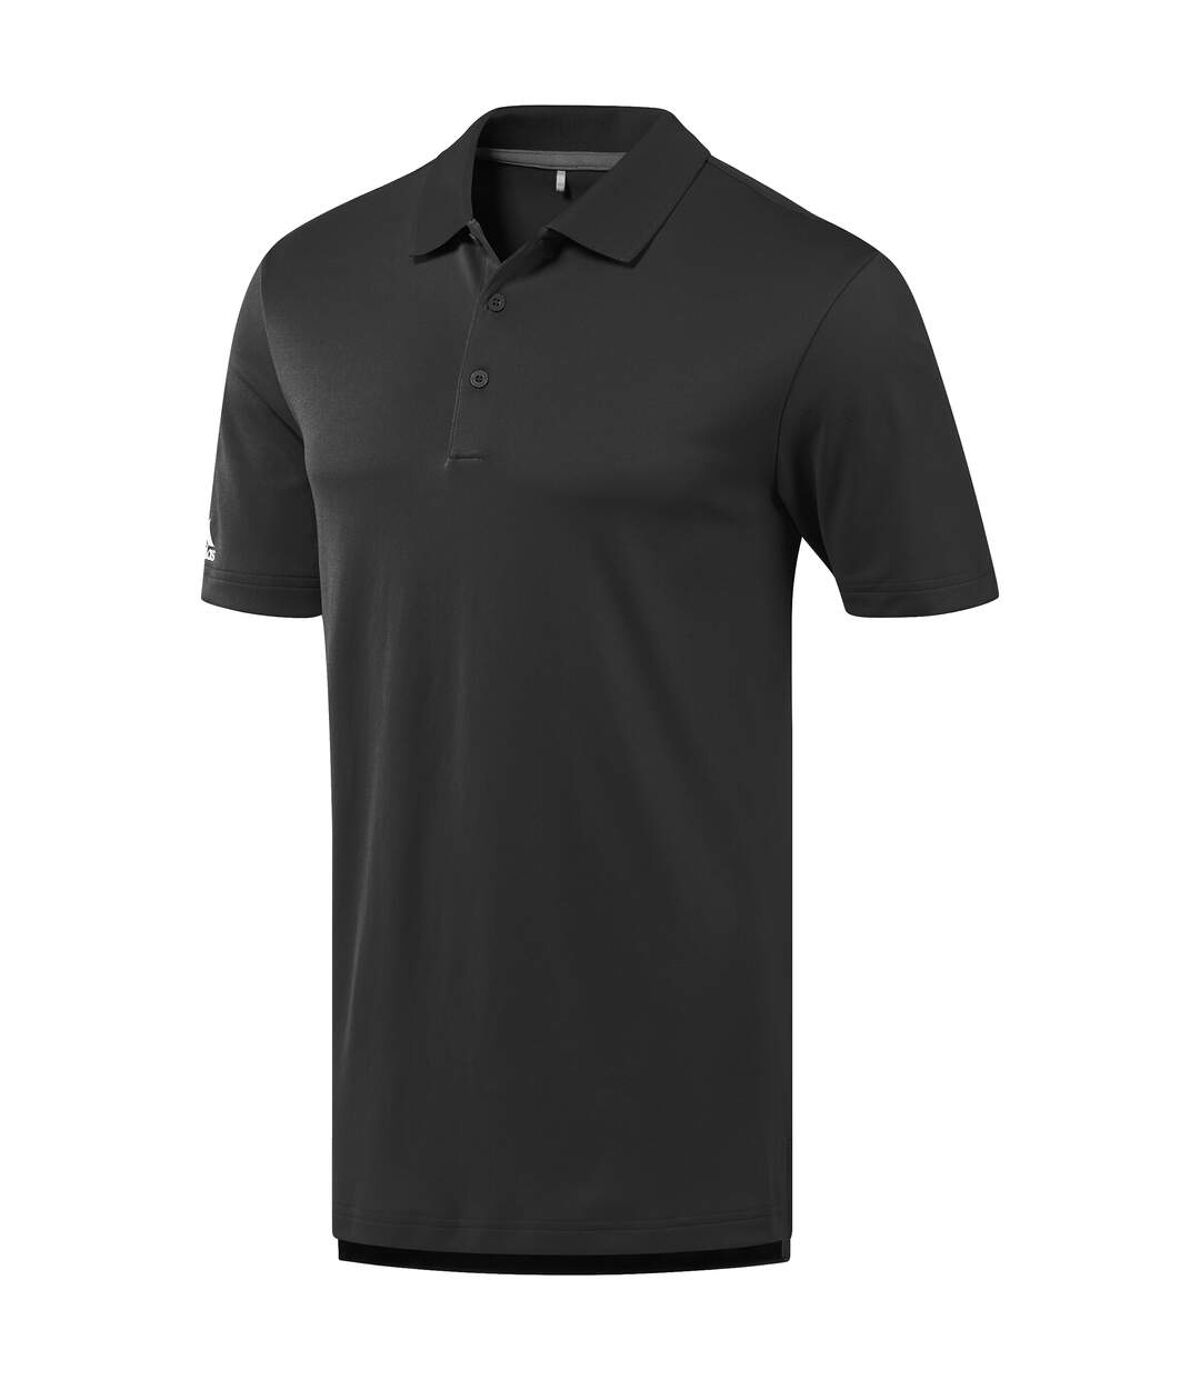 Adidas Mens Performance Polo Shirt (Black)